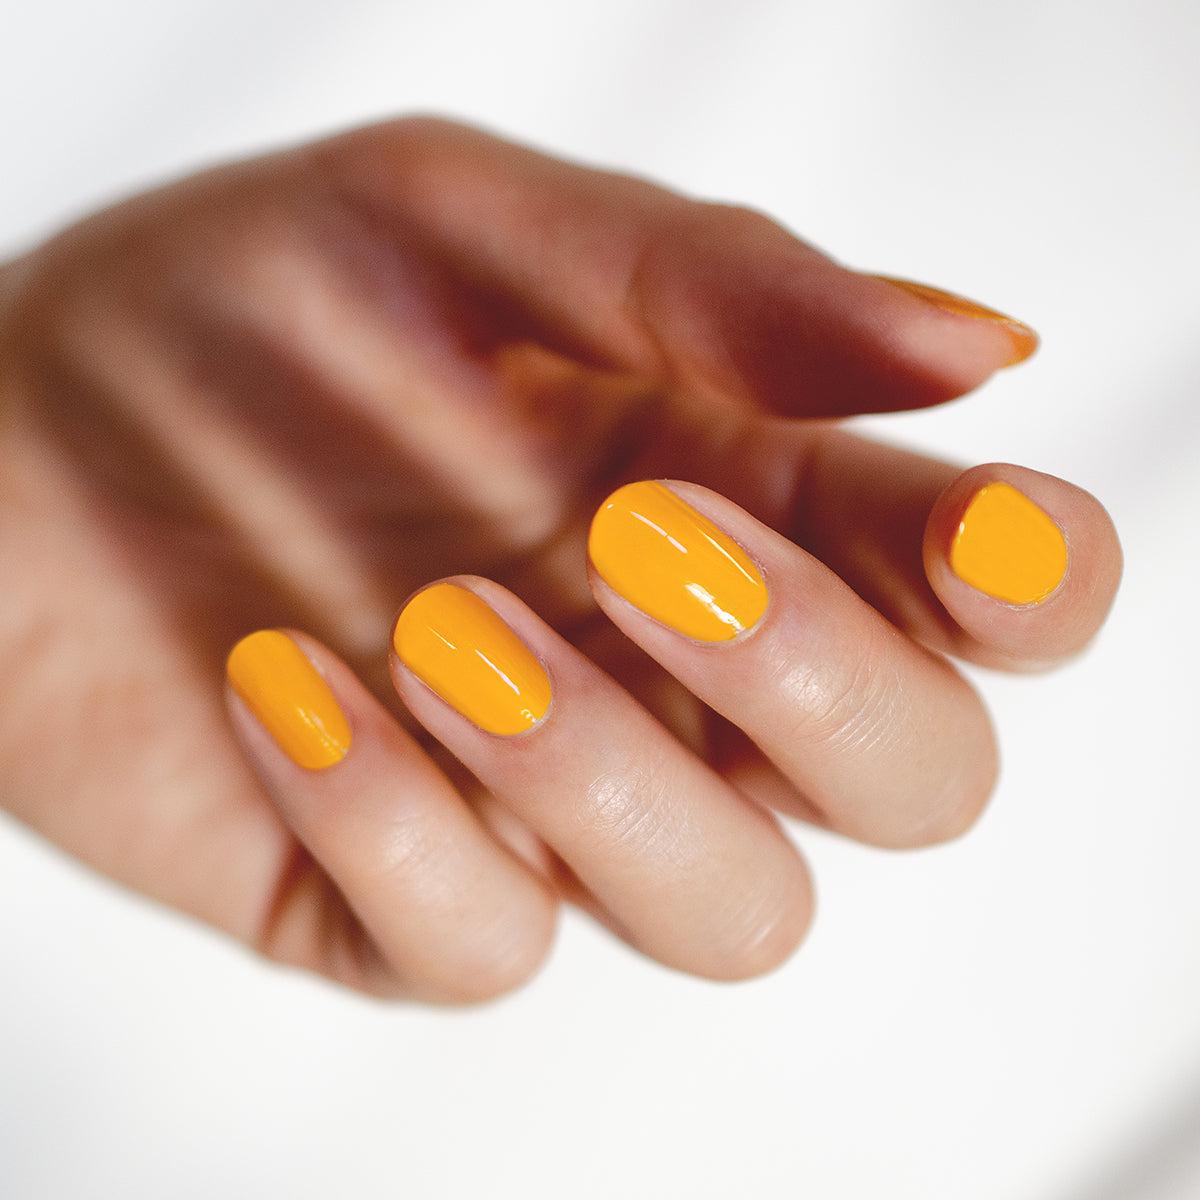 Round nail shape with yellow nail polish